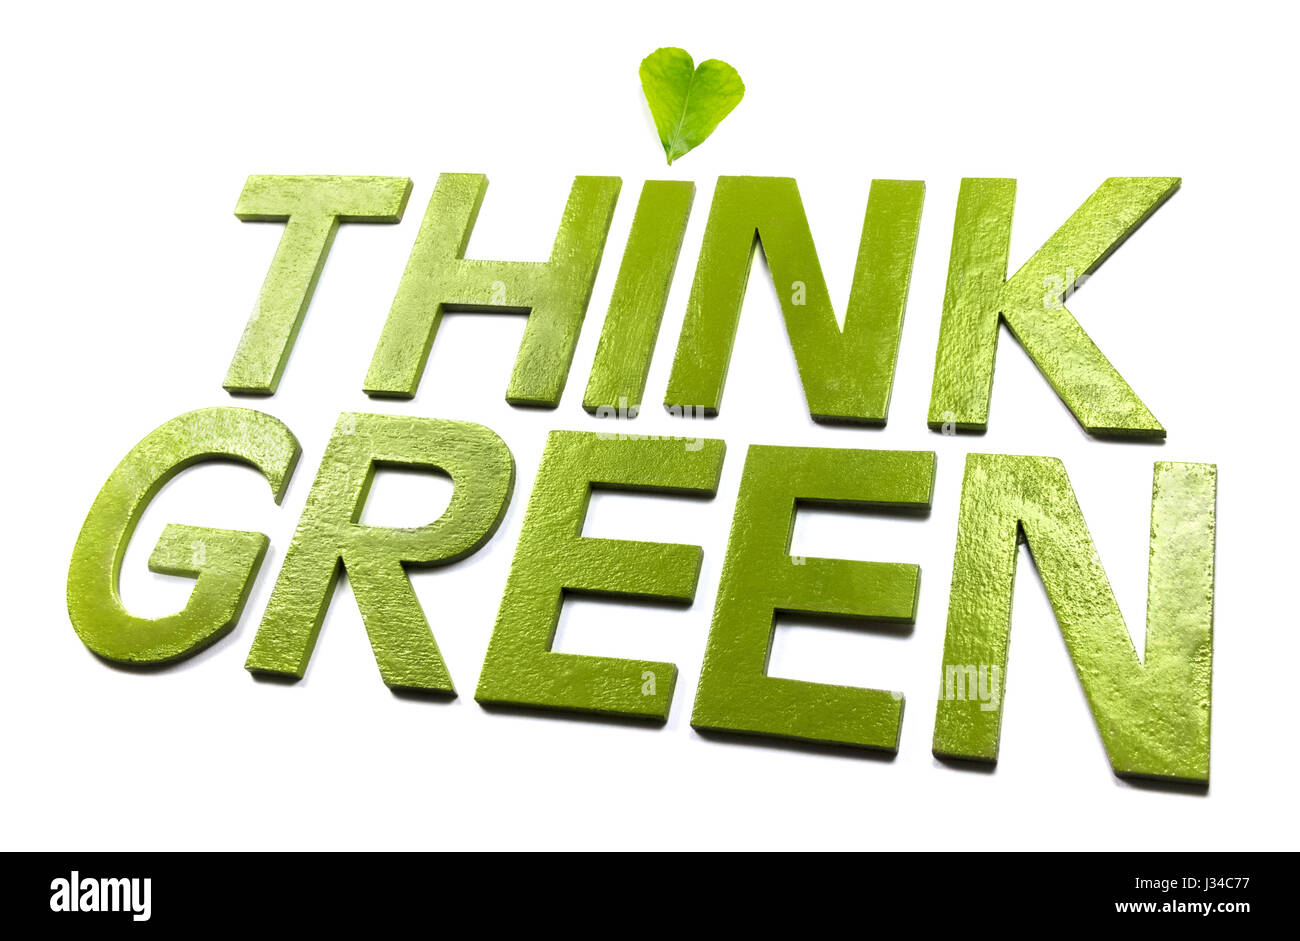 Denken Sie grün mit einem grünen Herzen Blatt auf einem weißen Hintergrund. Stockfoto